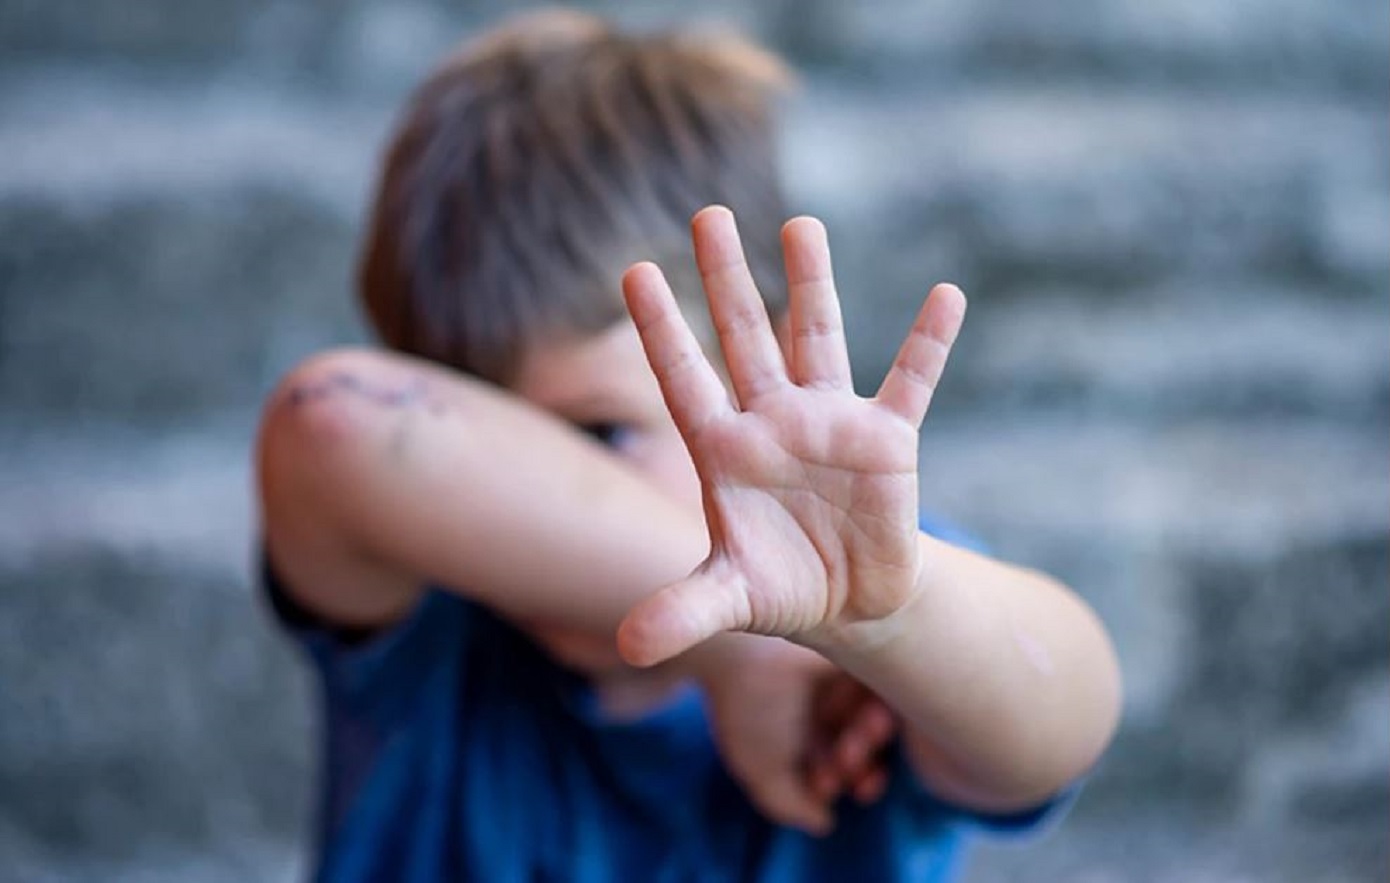 Τρία τα παιδιά που κακοποιούσε ο νονός από το Ηράκλειο &#8211; Καταγγέλλουν ασέλγεια από την ηλικία των 5 ετών